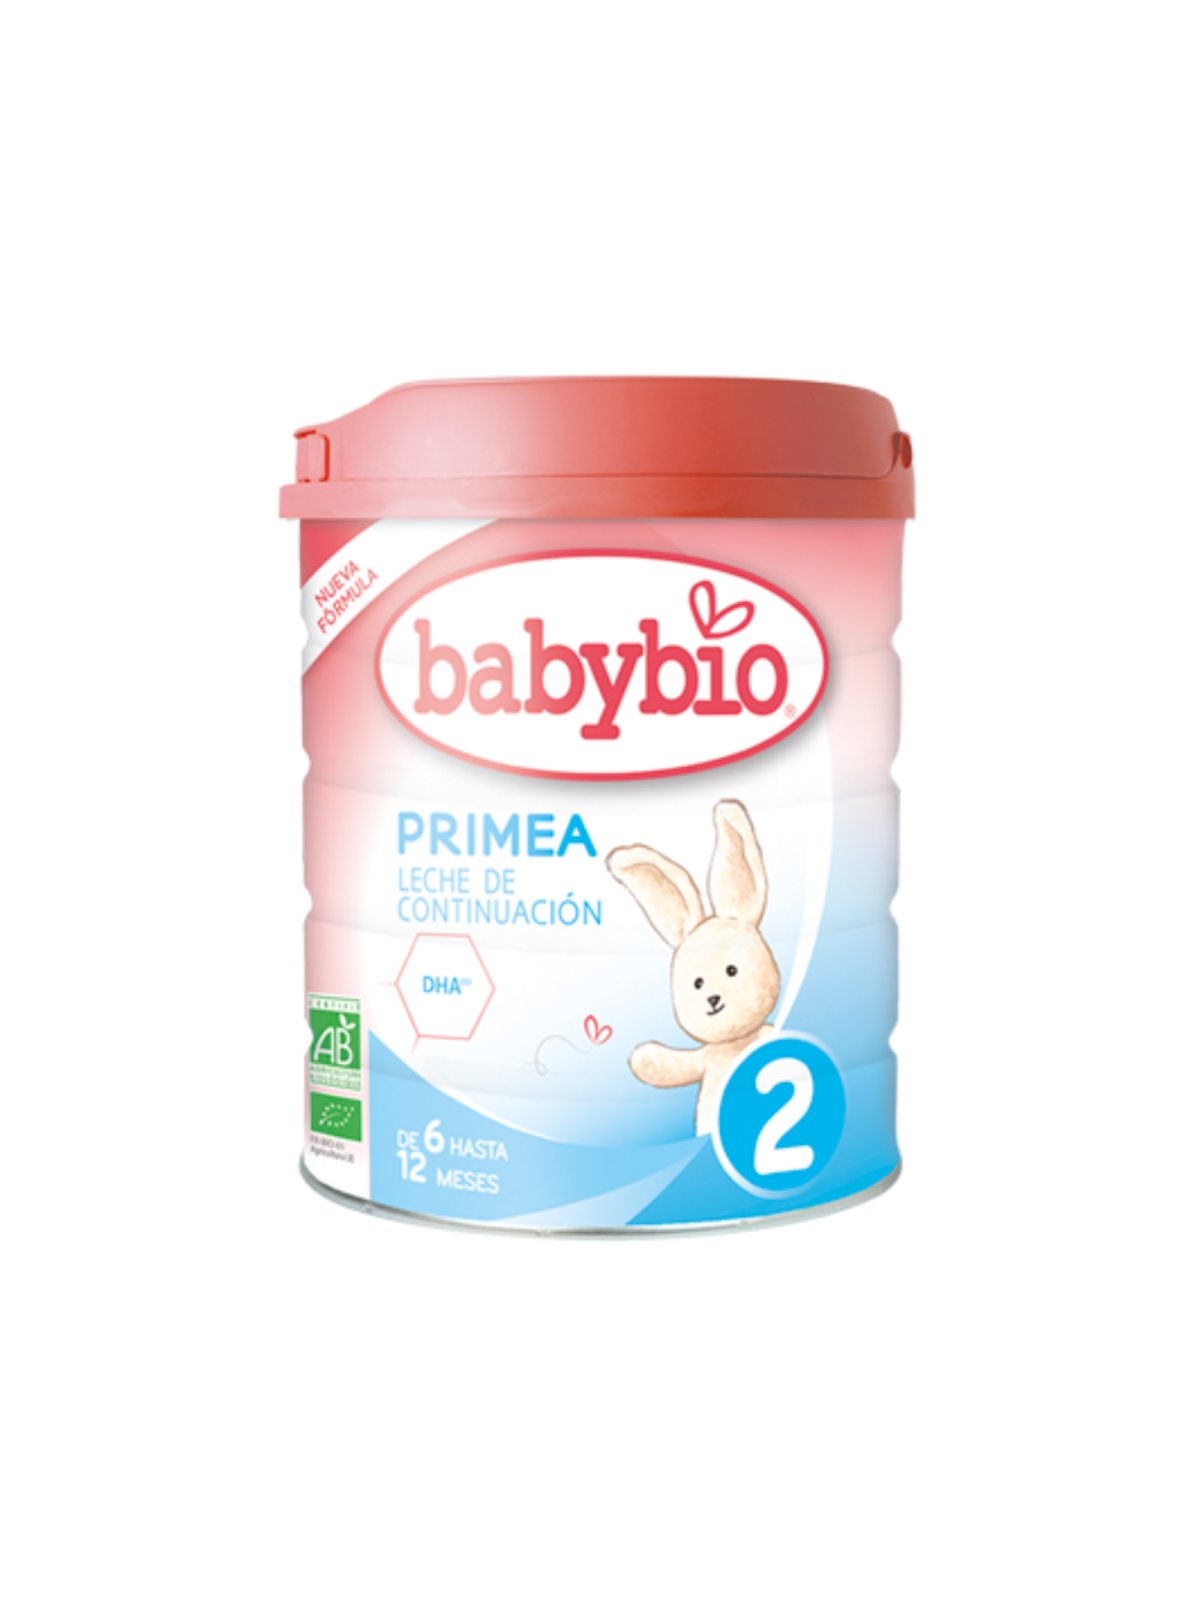 Leche infantil de vaca BIO PRIMEA 2 Continuación BabyBio 800g